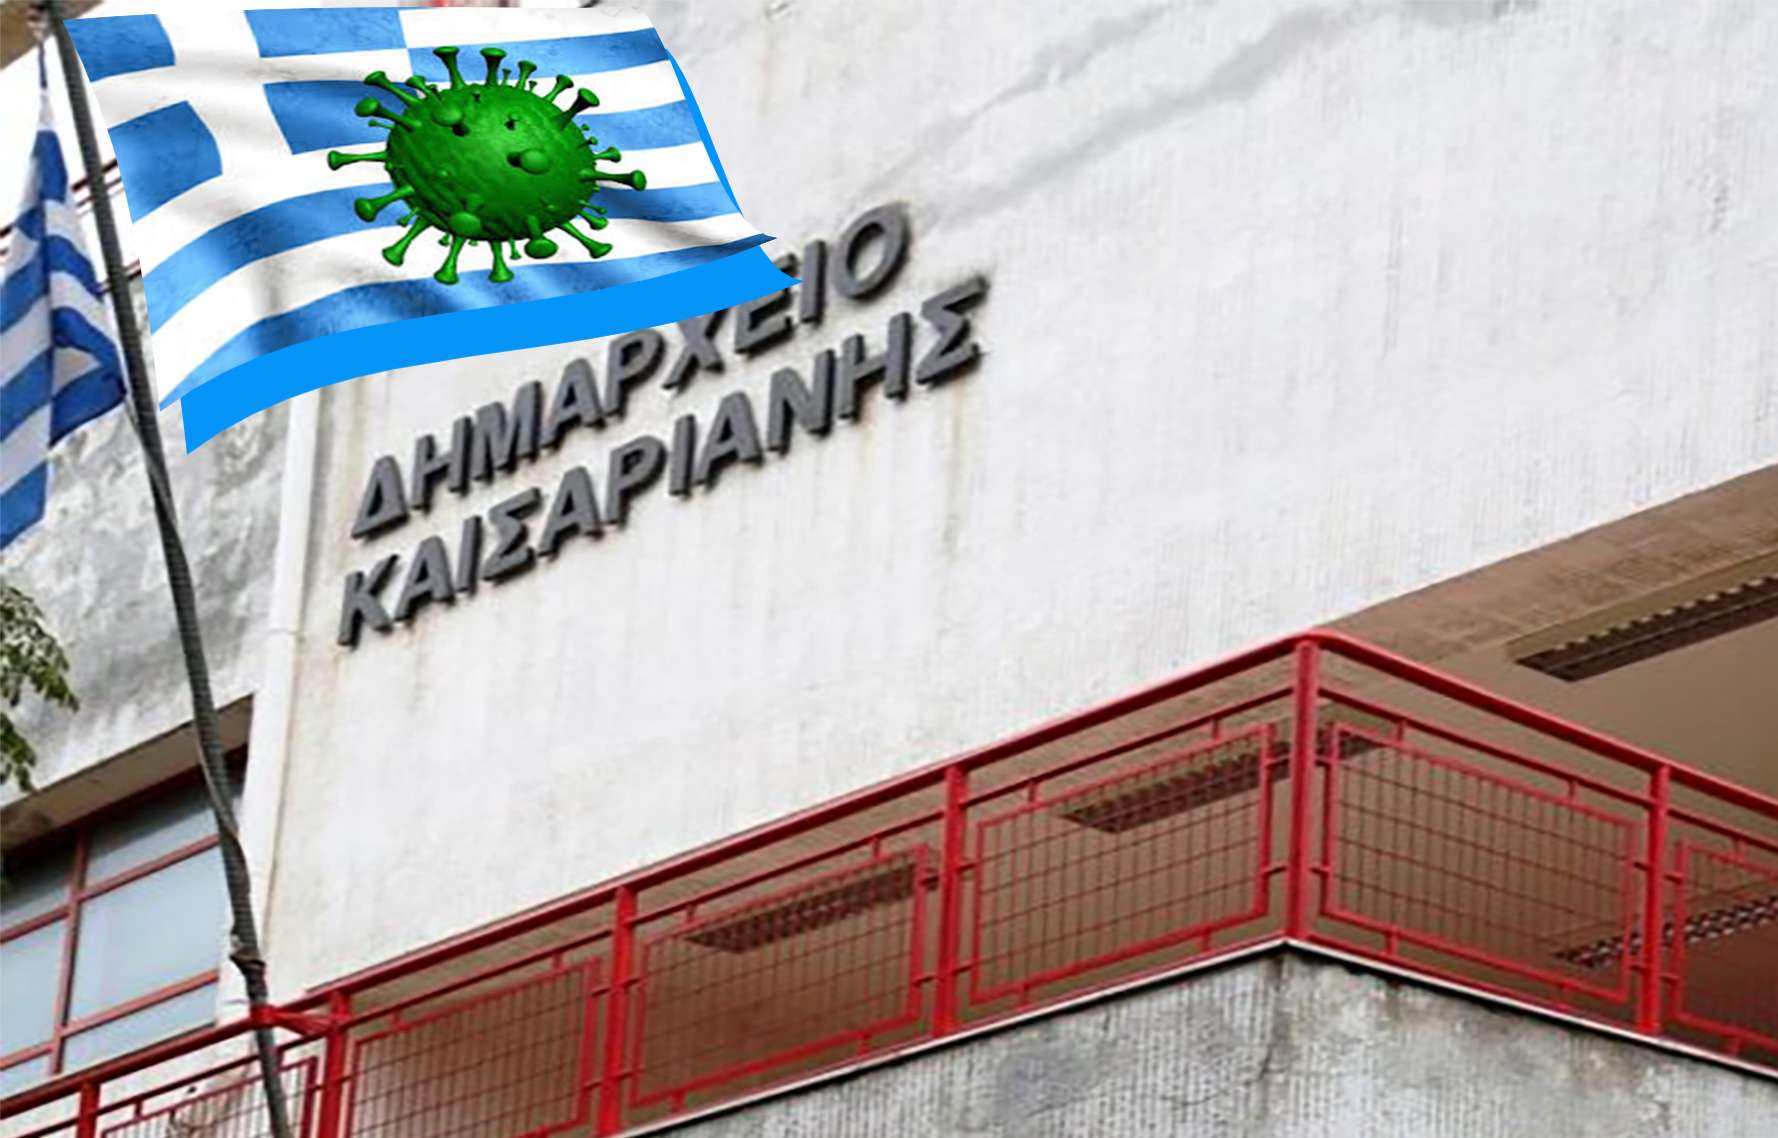 πανδημία στο δημαρχείο Καισαριανής και σε δομές της πόλης ο δήμαρχος Βοσκόπουλος συνεχίζει τις αθλιότητες